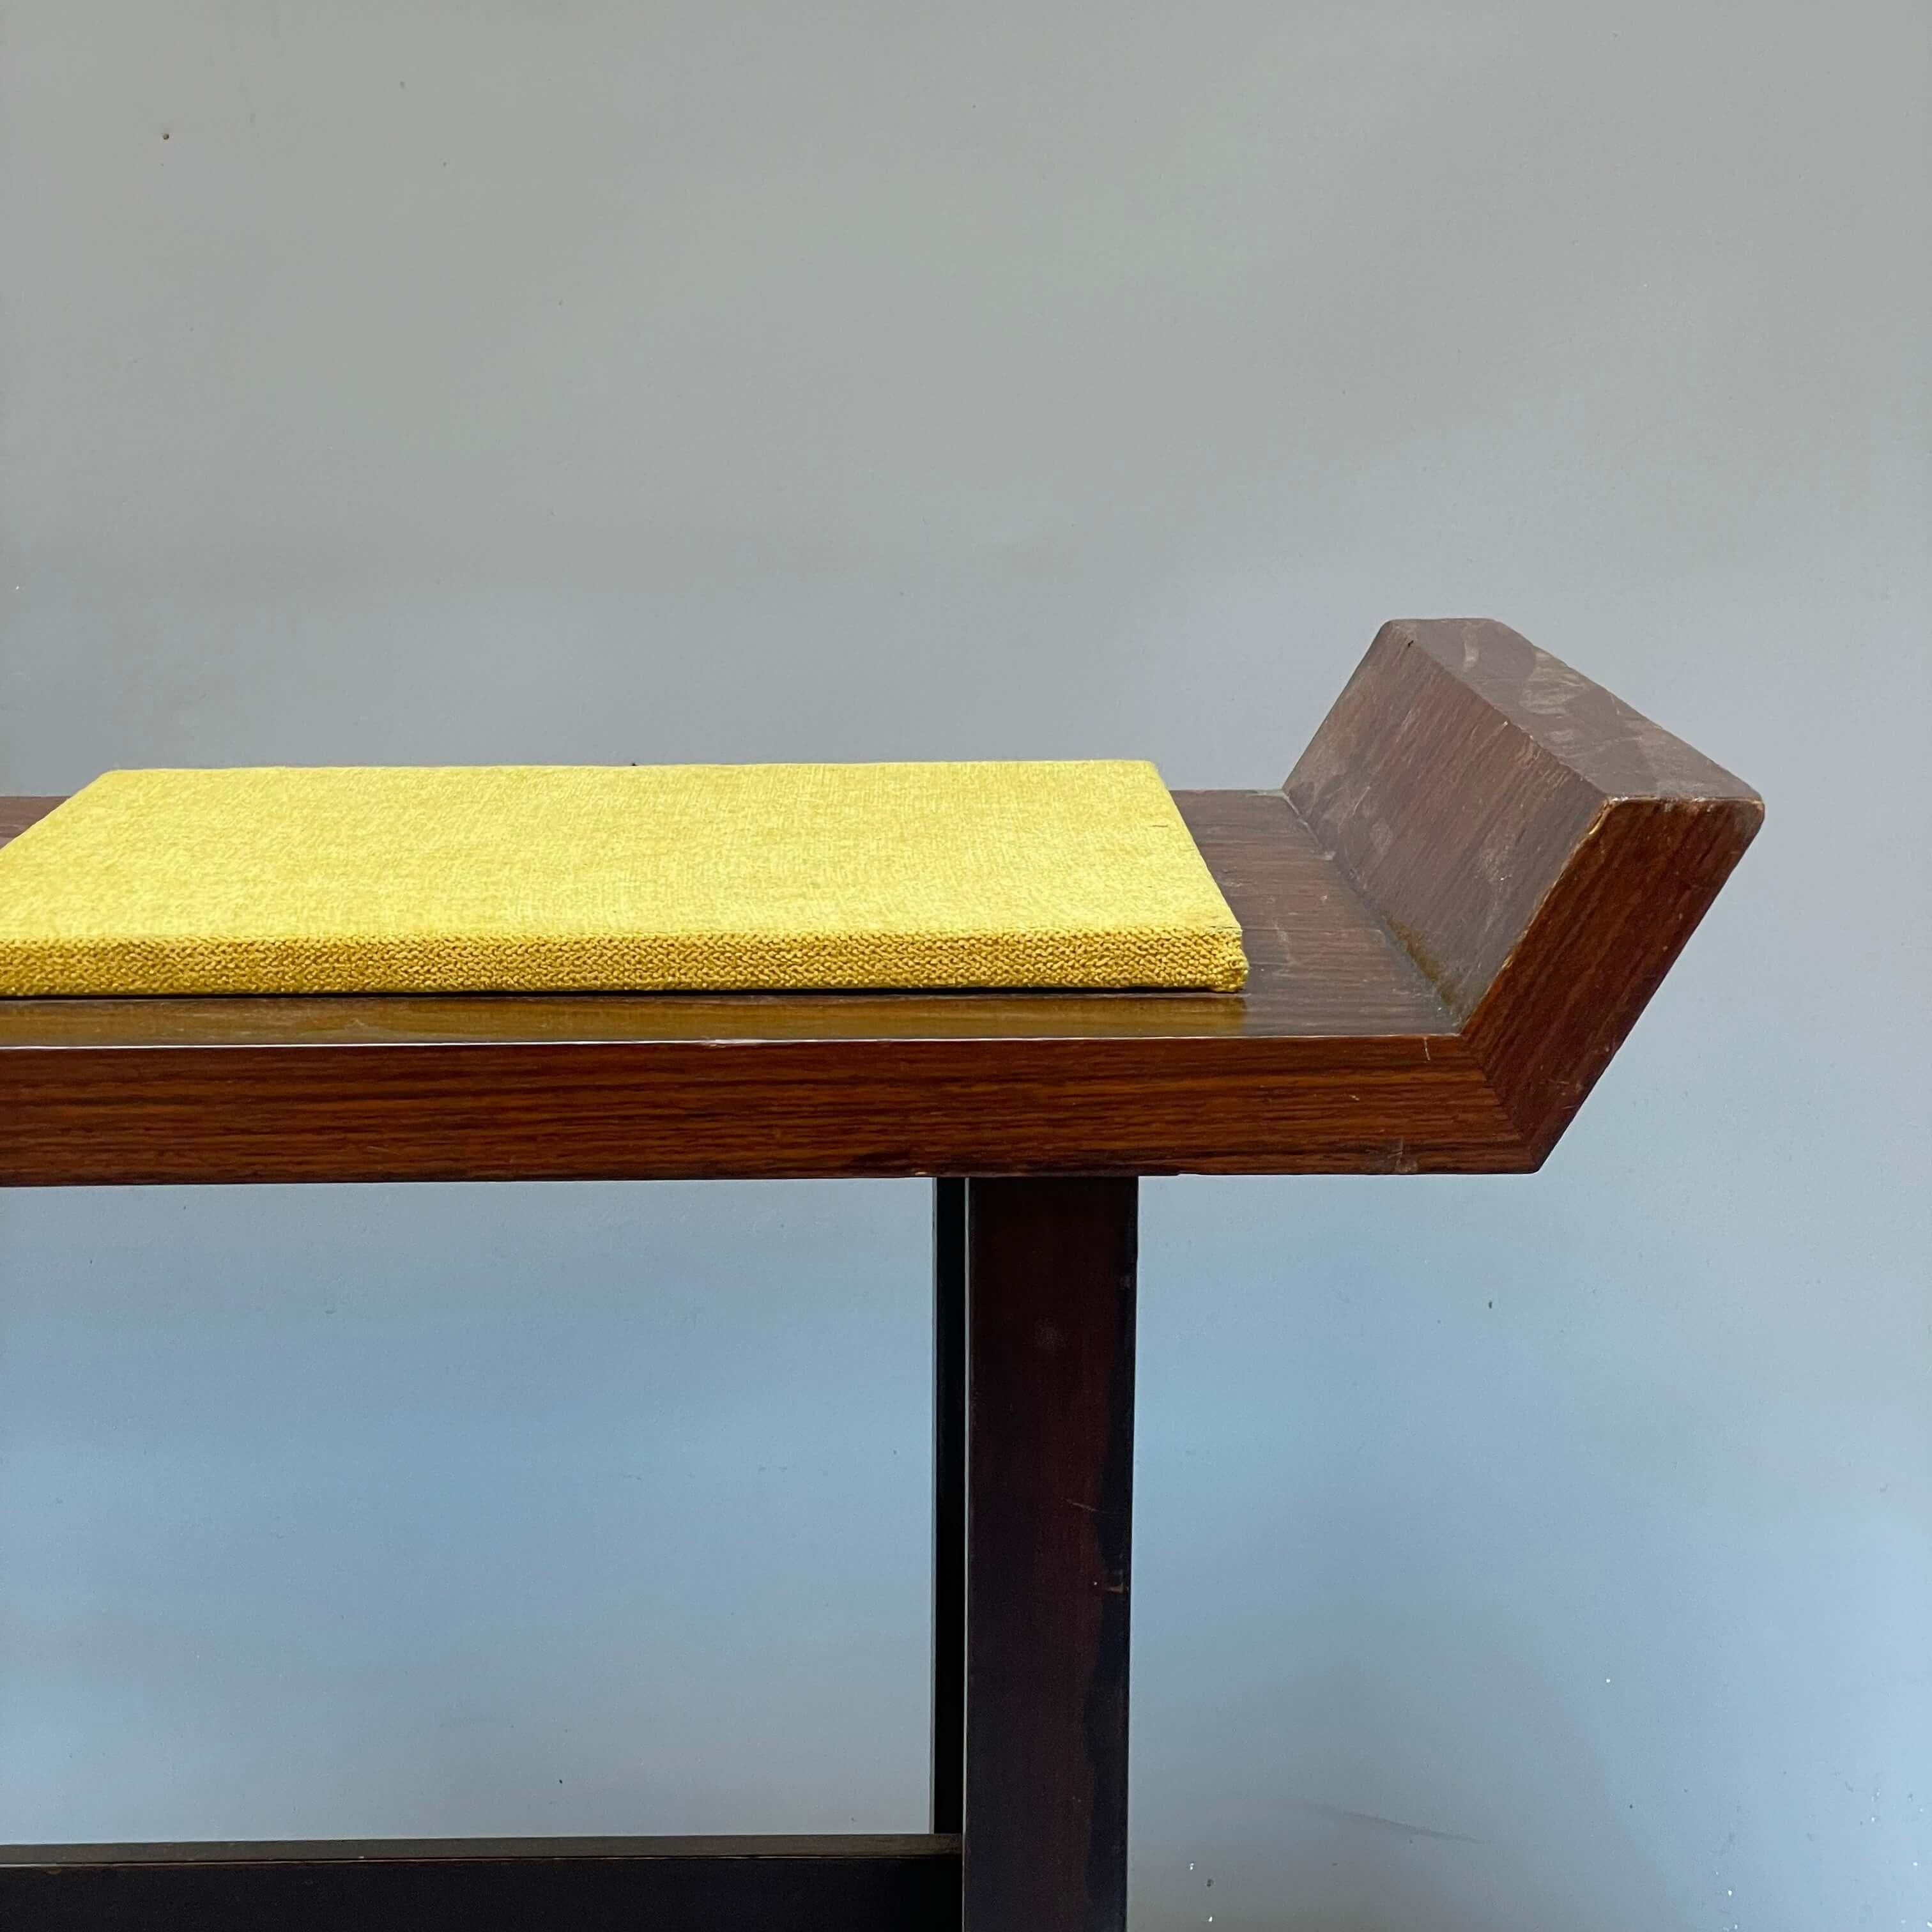 Petit banc produit par Poltronova. Design des années 1960, moderne et frais, grâce au coussin de couleur jaune.